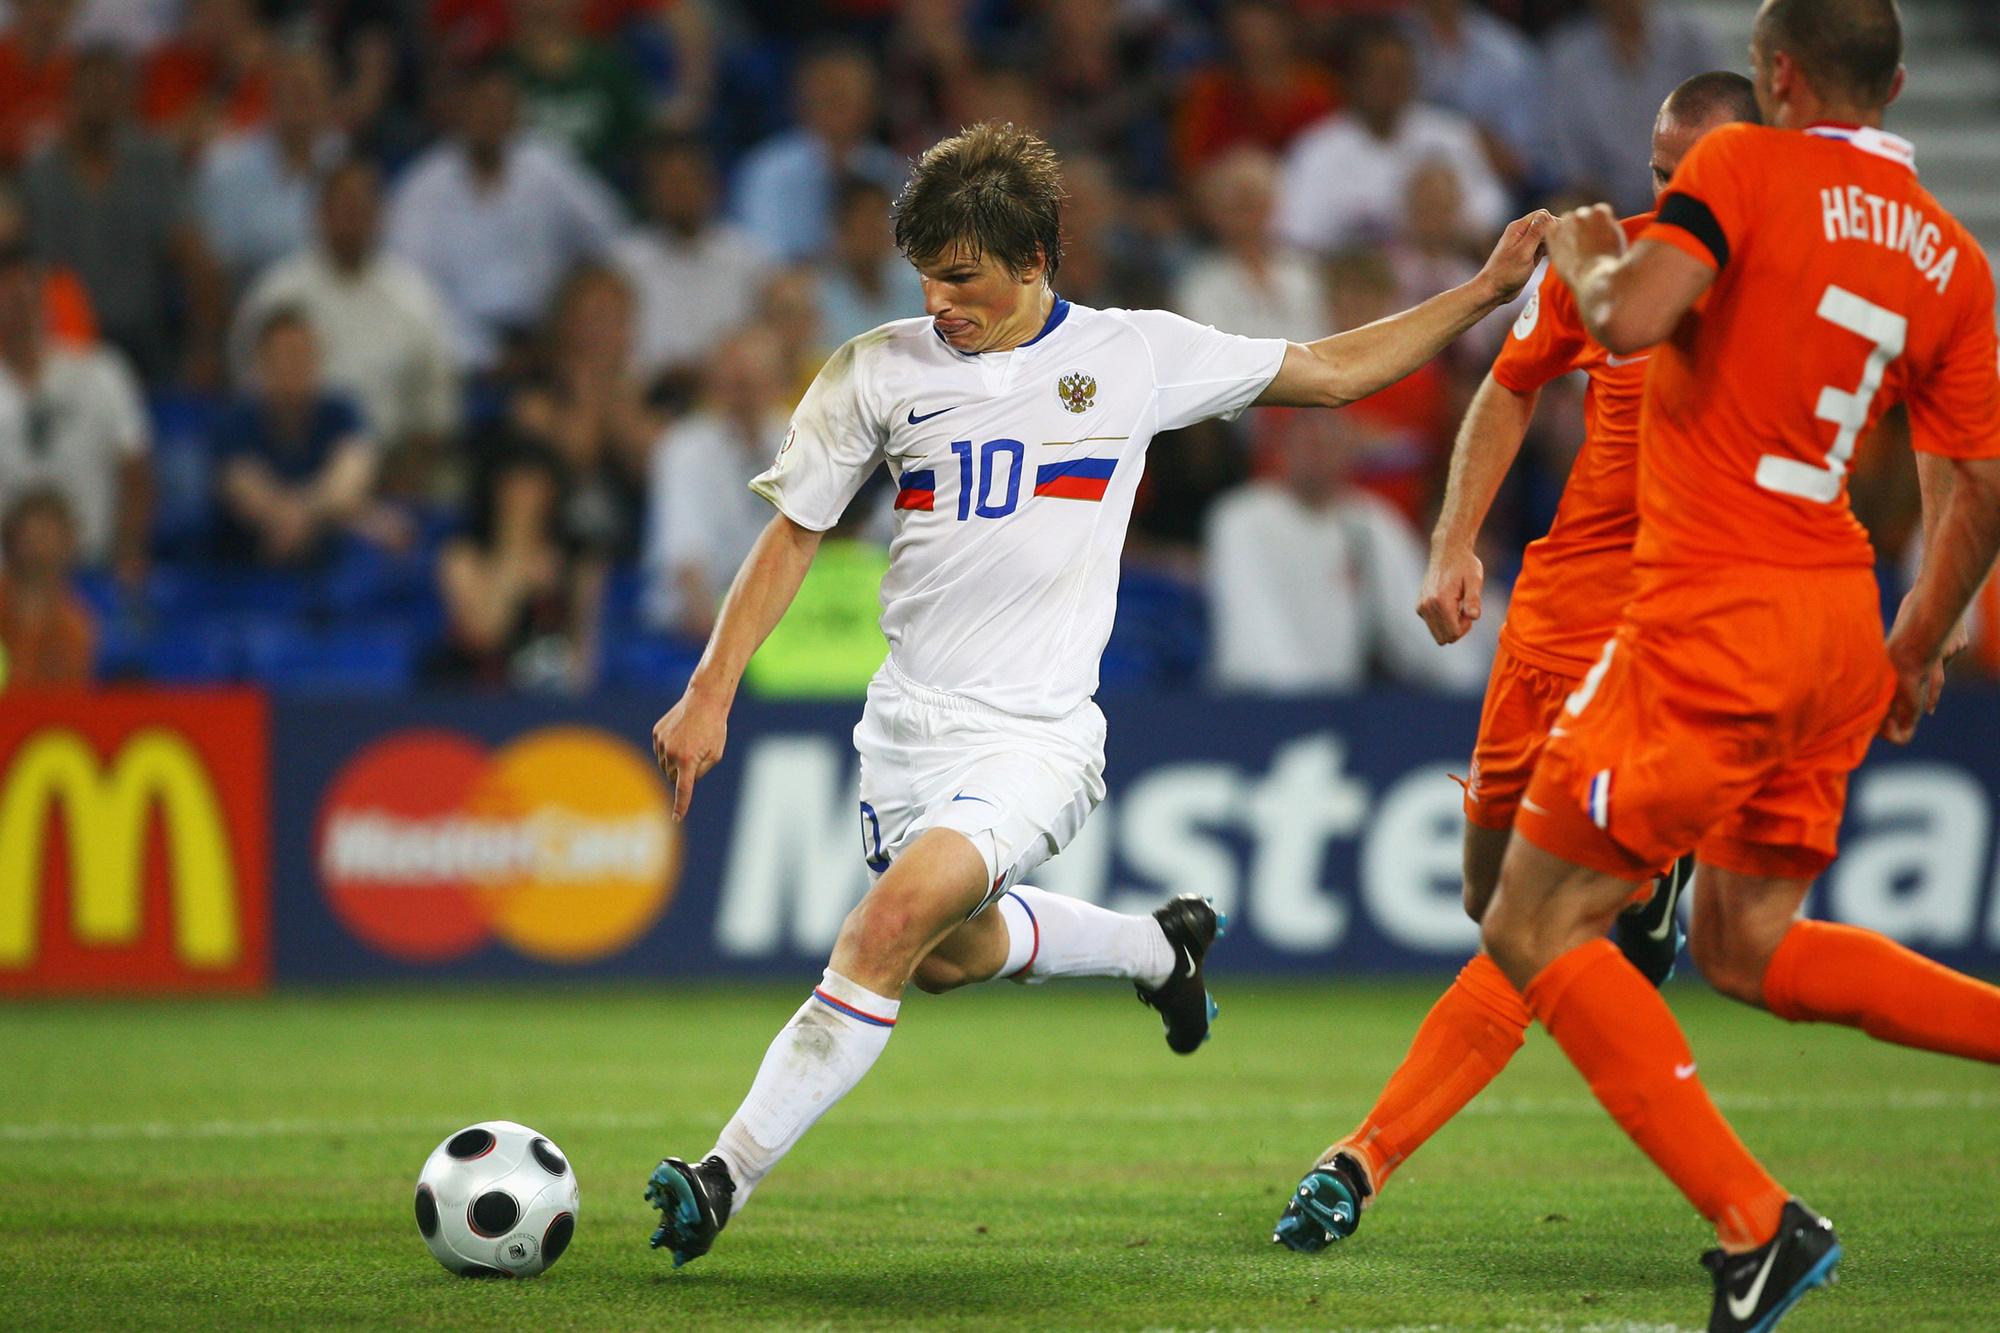 Arsjavin in actie tegen Nederland op het EK 2008